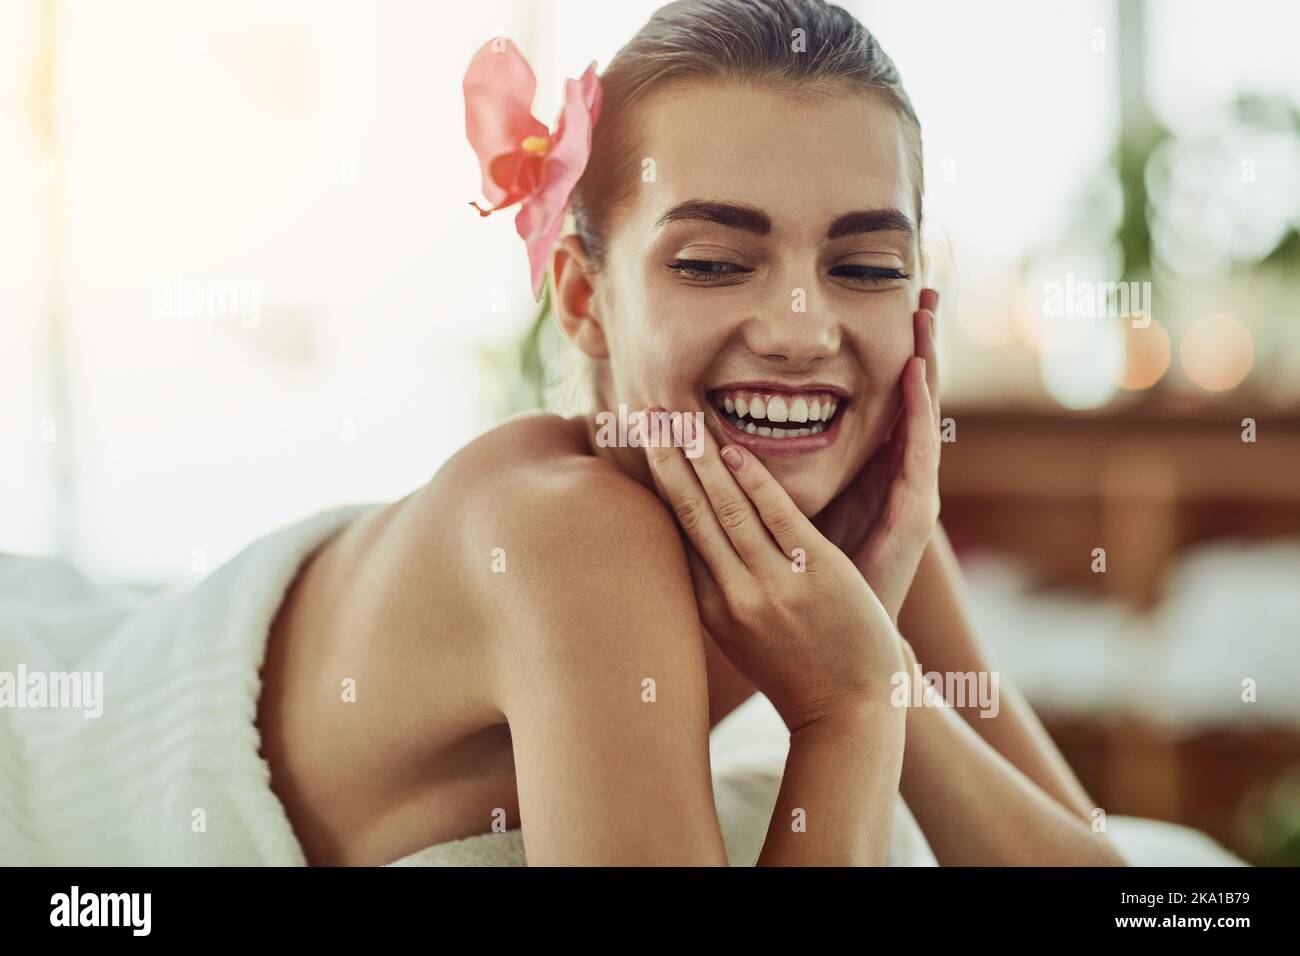 Aujourd'hui, il s'agit d'un soin de soi. Une jeune femme attirante se fait dorloter dans un spa de beauté. Banque D'Images